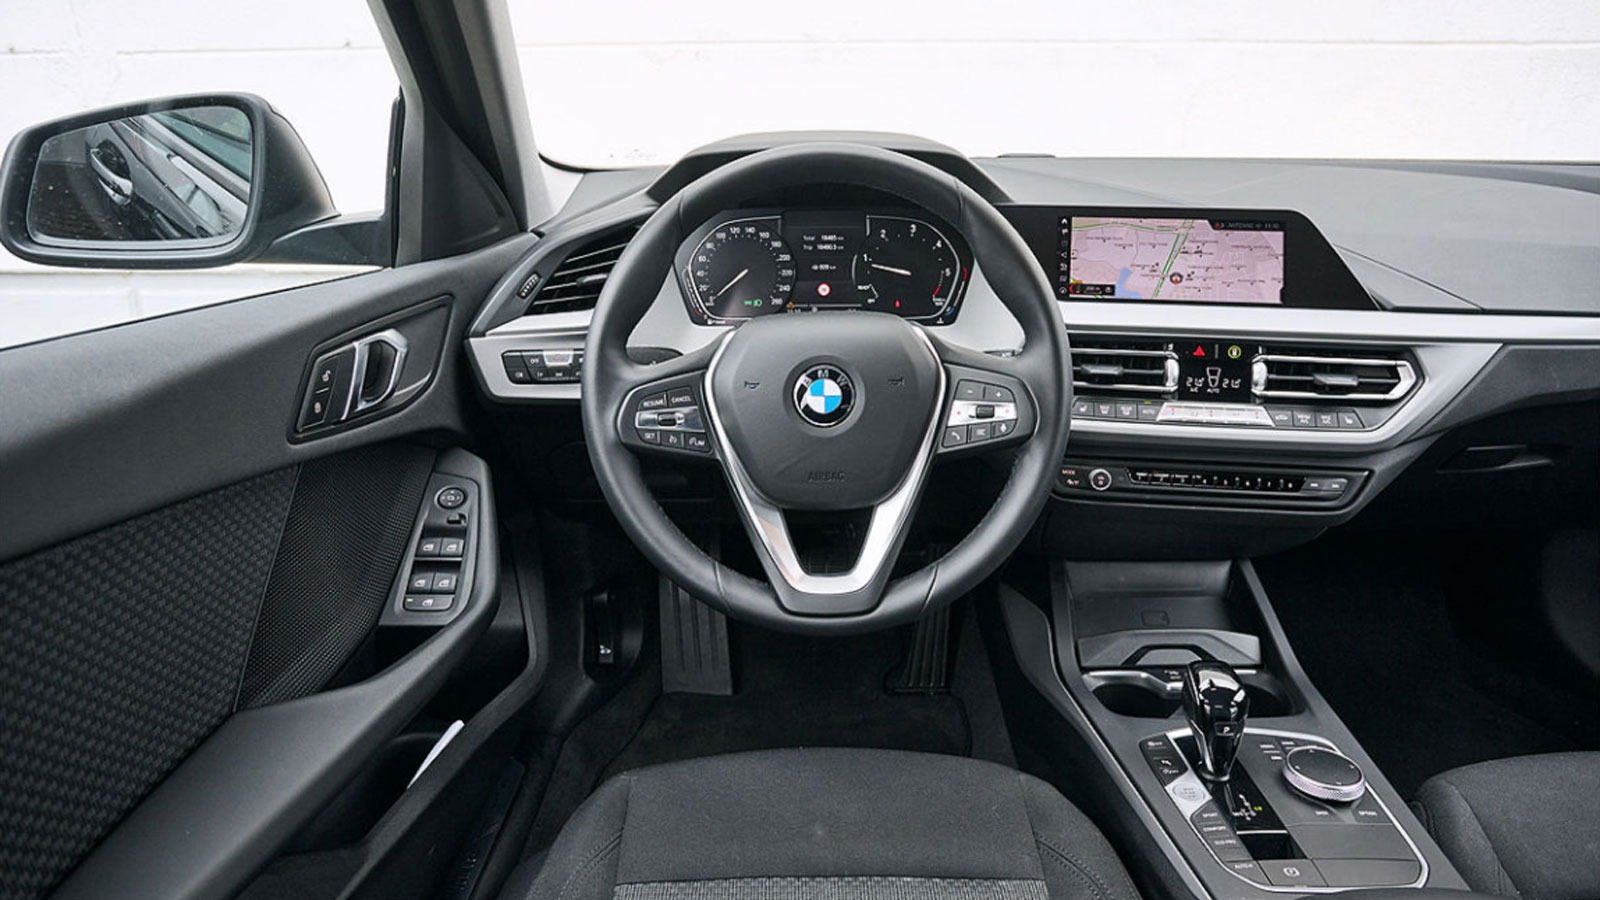 Μεταχειρισμένη BMW 118d 2019: Πόσο καλή είναι;